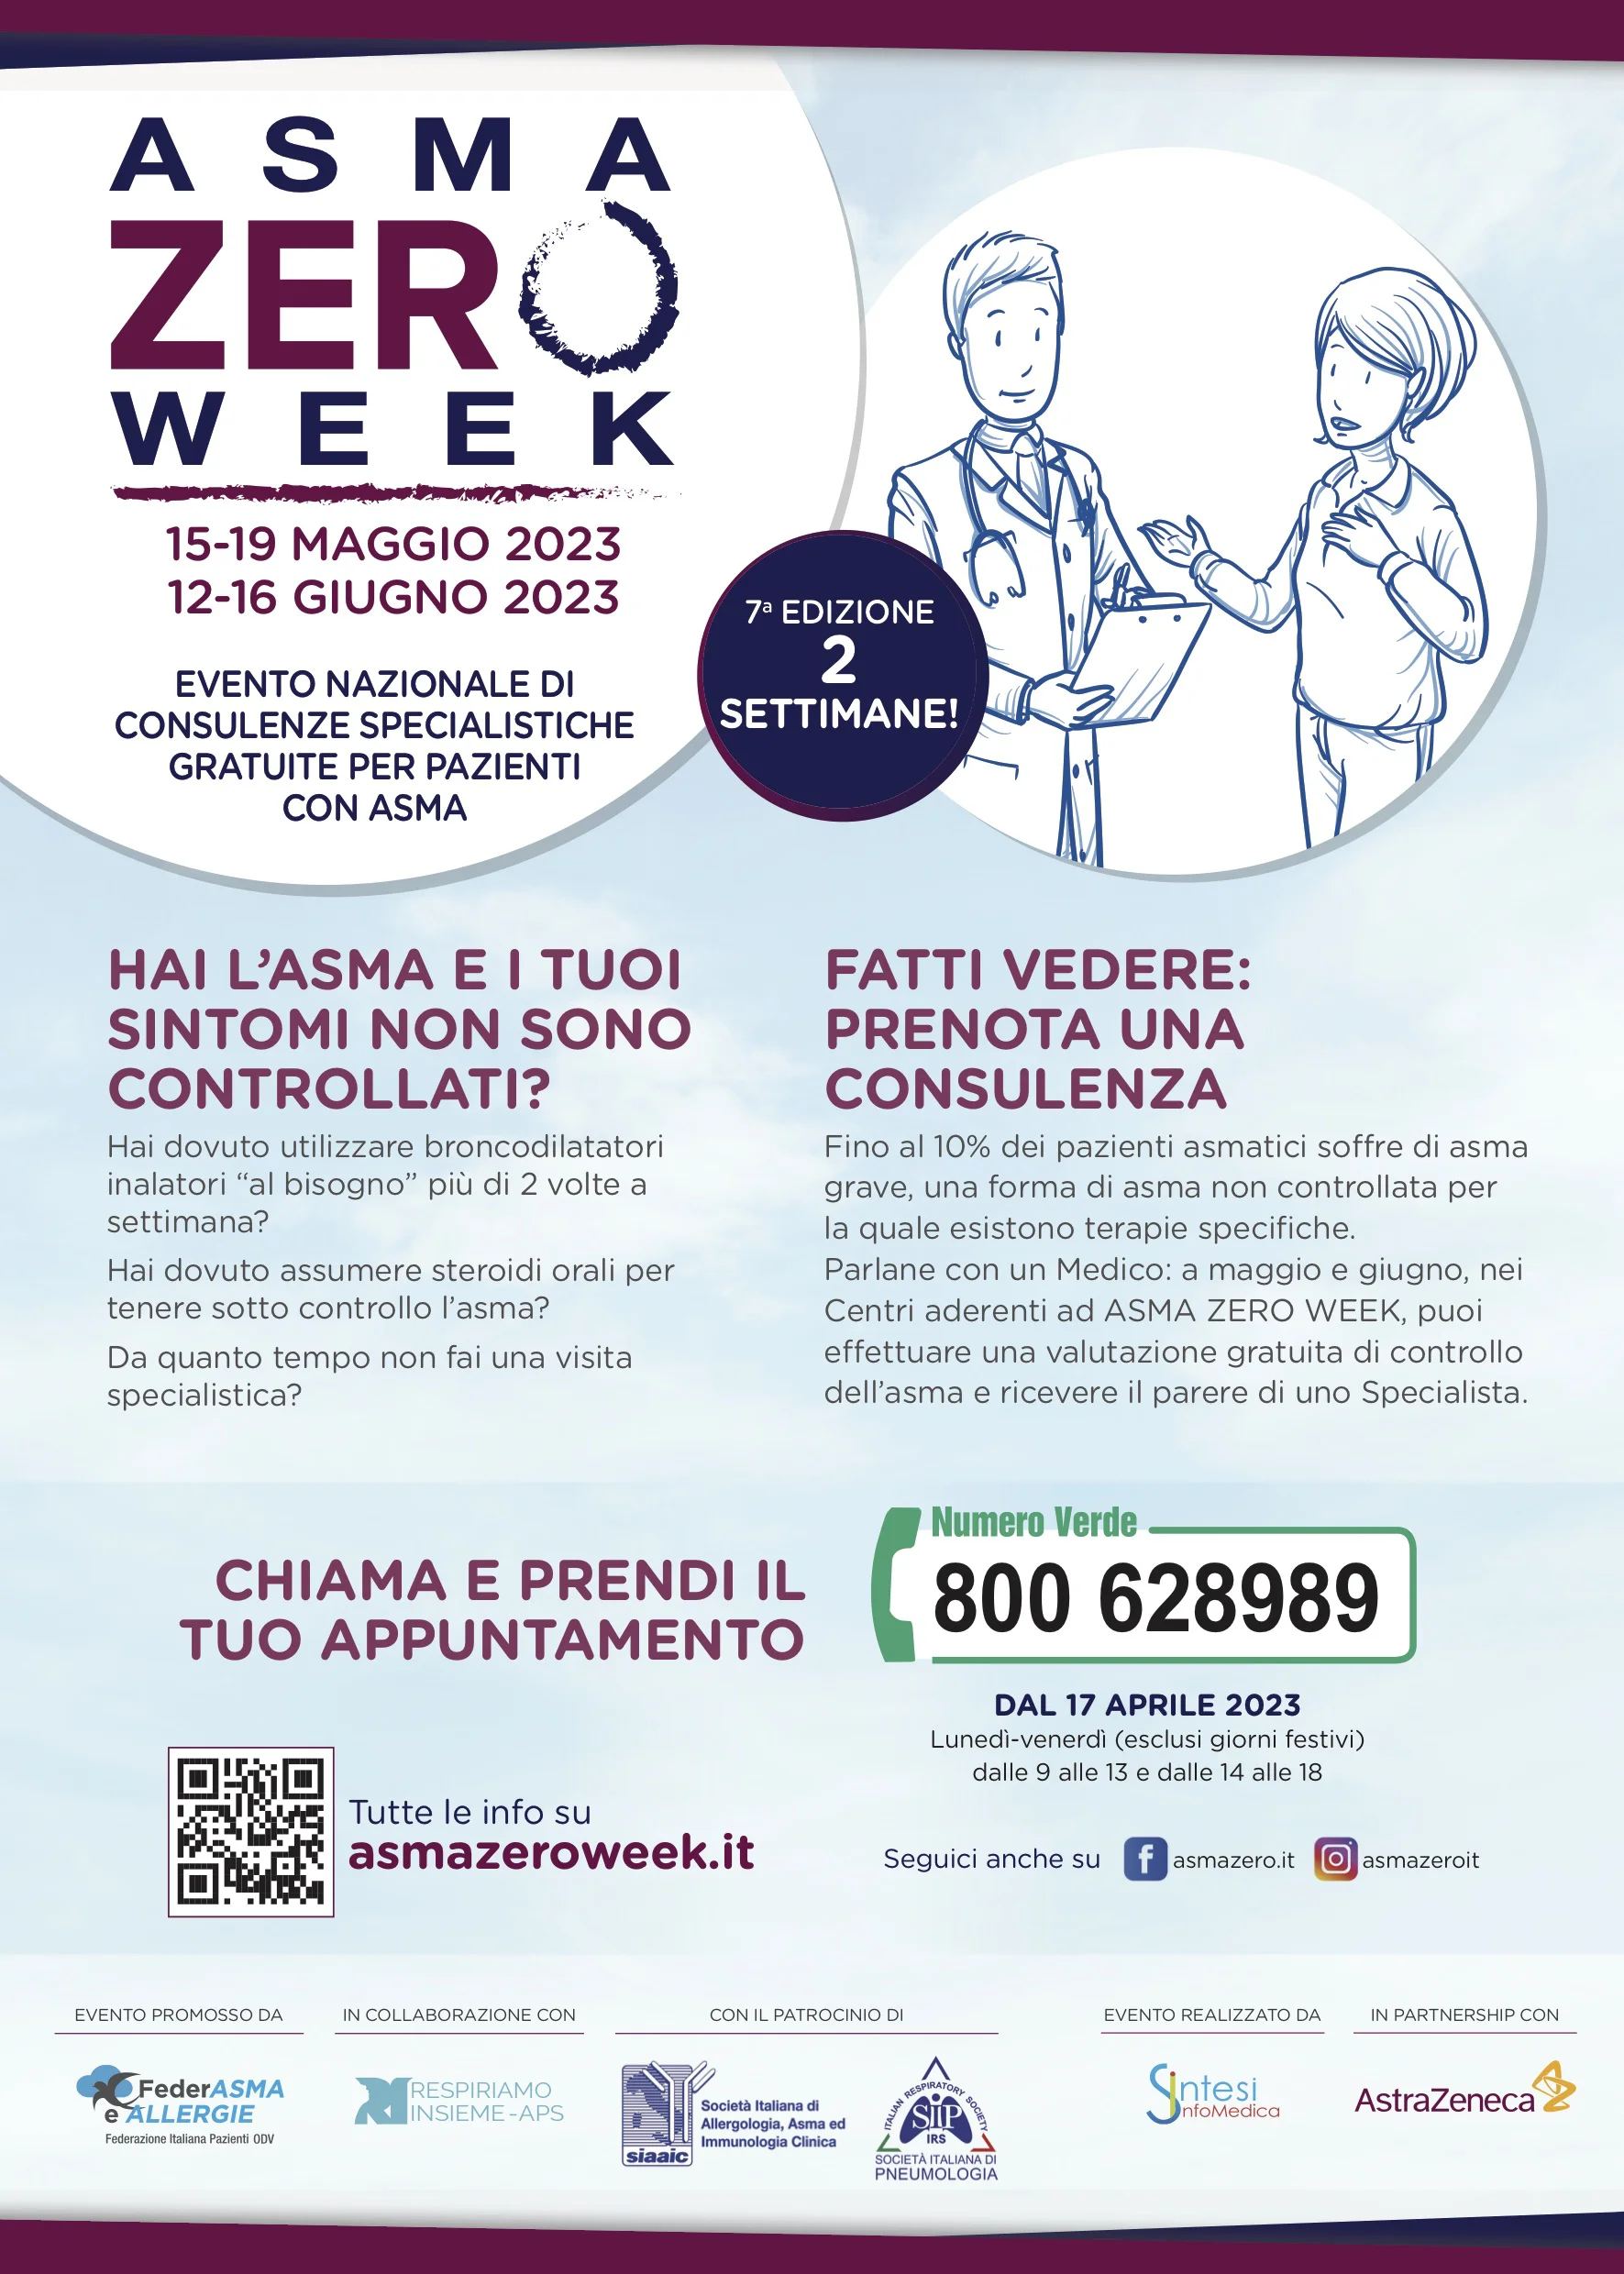 Asma Zero week: consulenze mediche gratuite prenotabili nei Centri specializzati